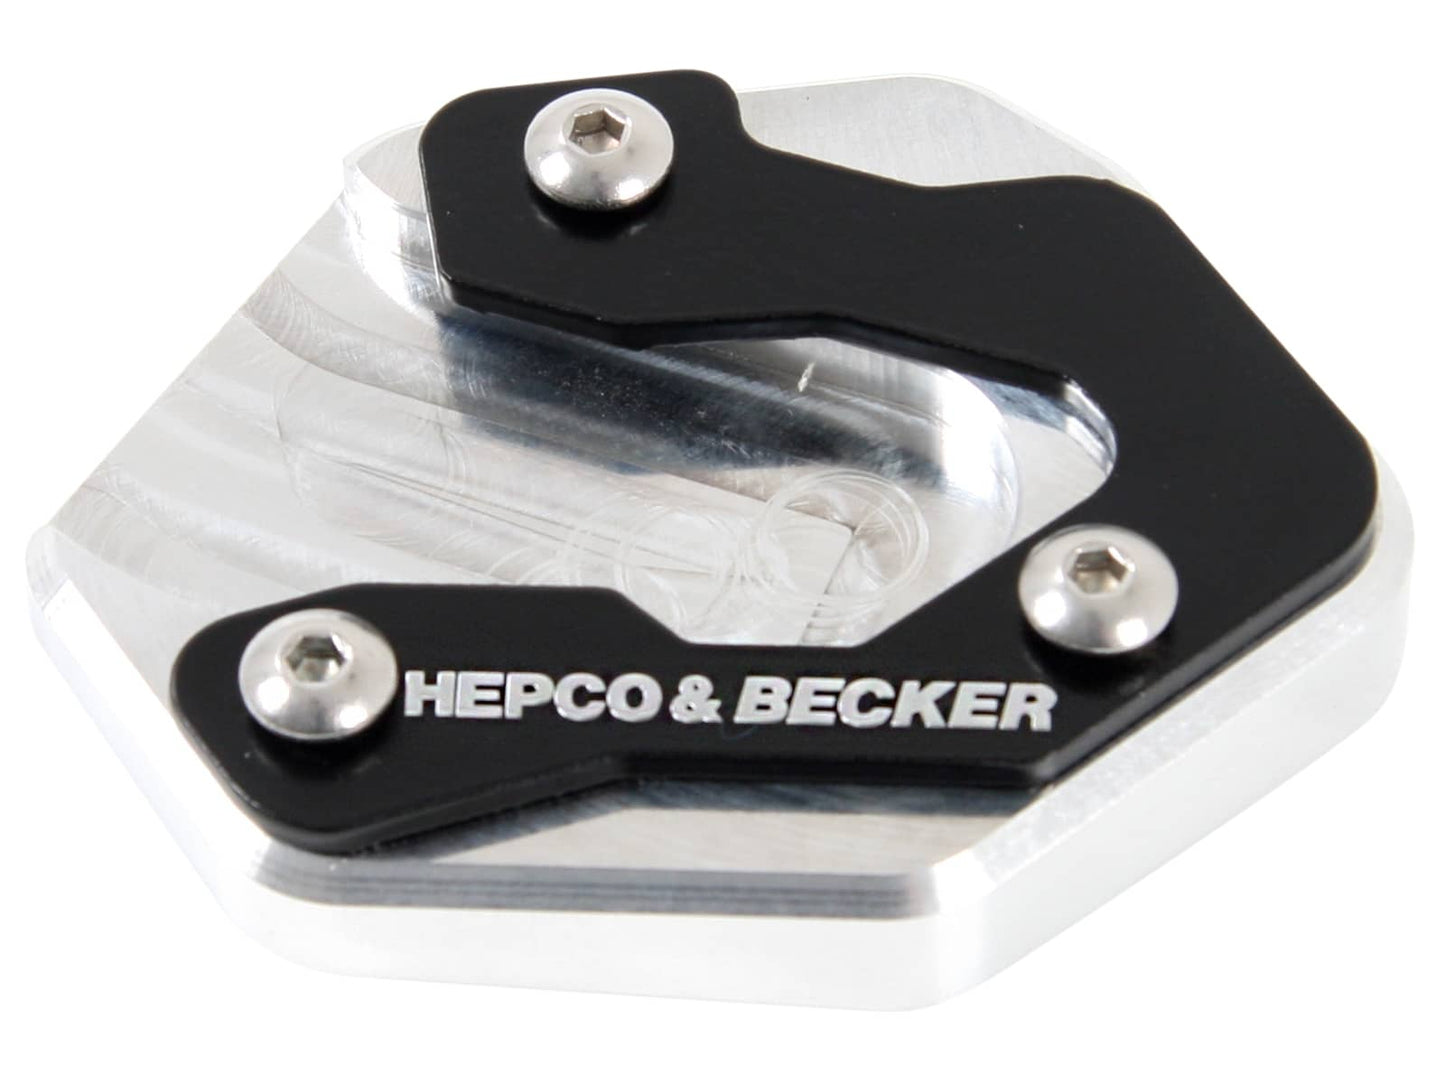 Hepco & Becker Kickstand enlargement